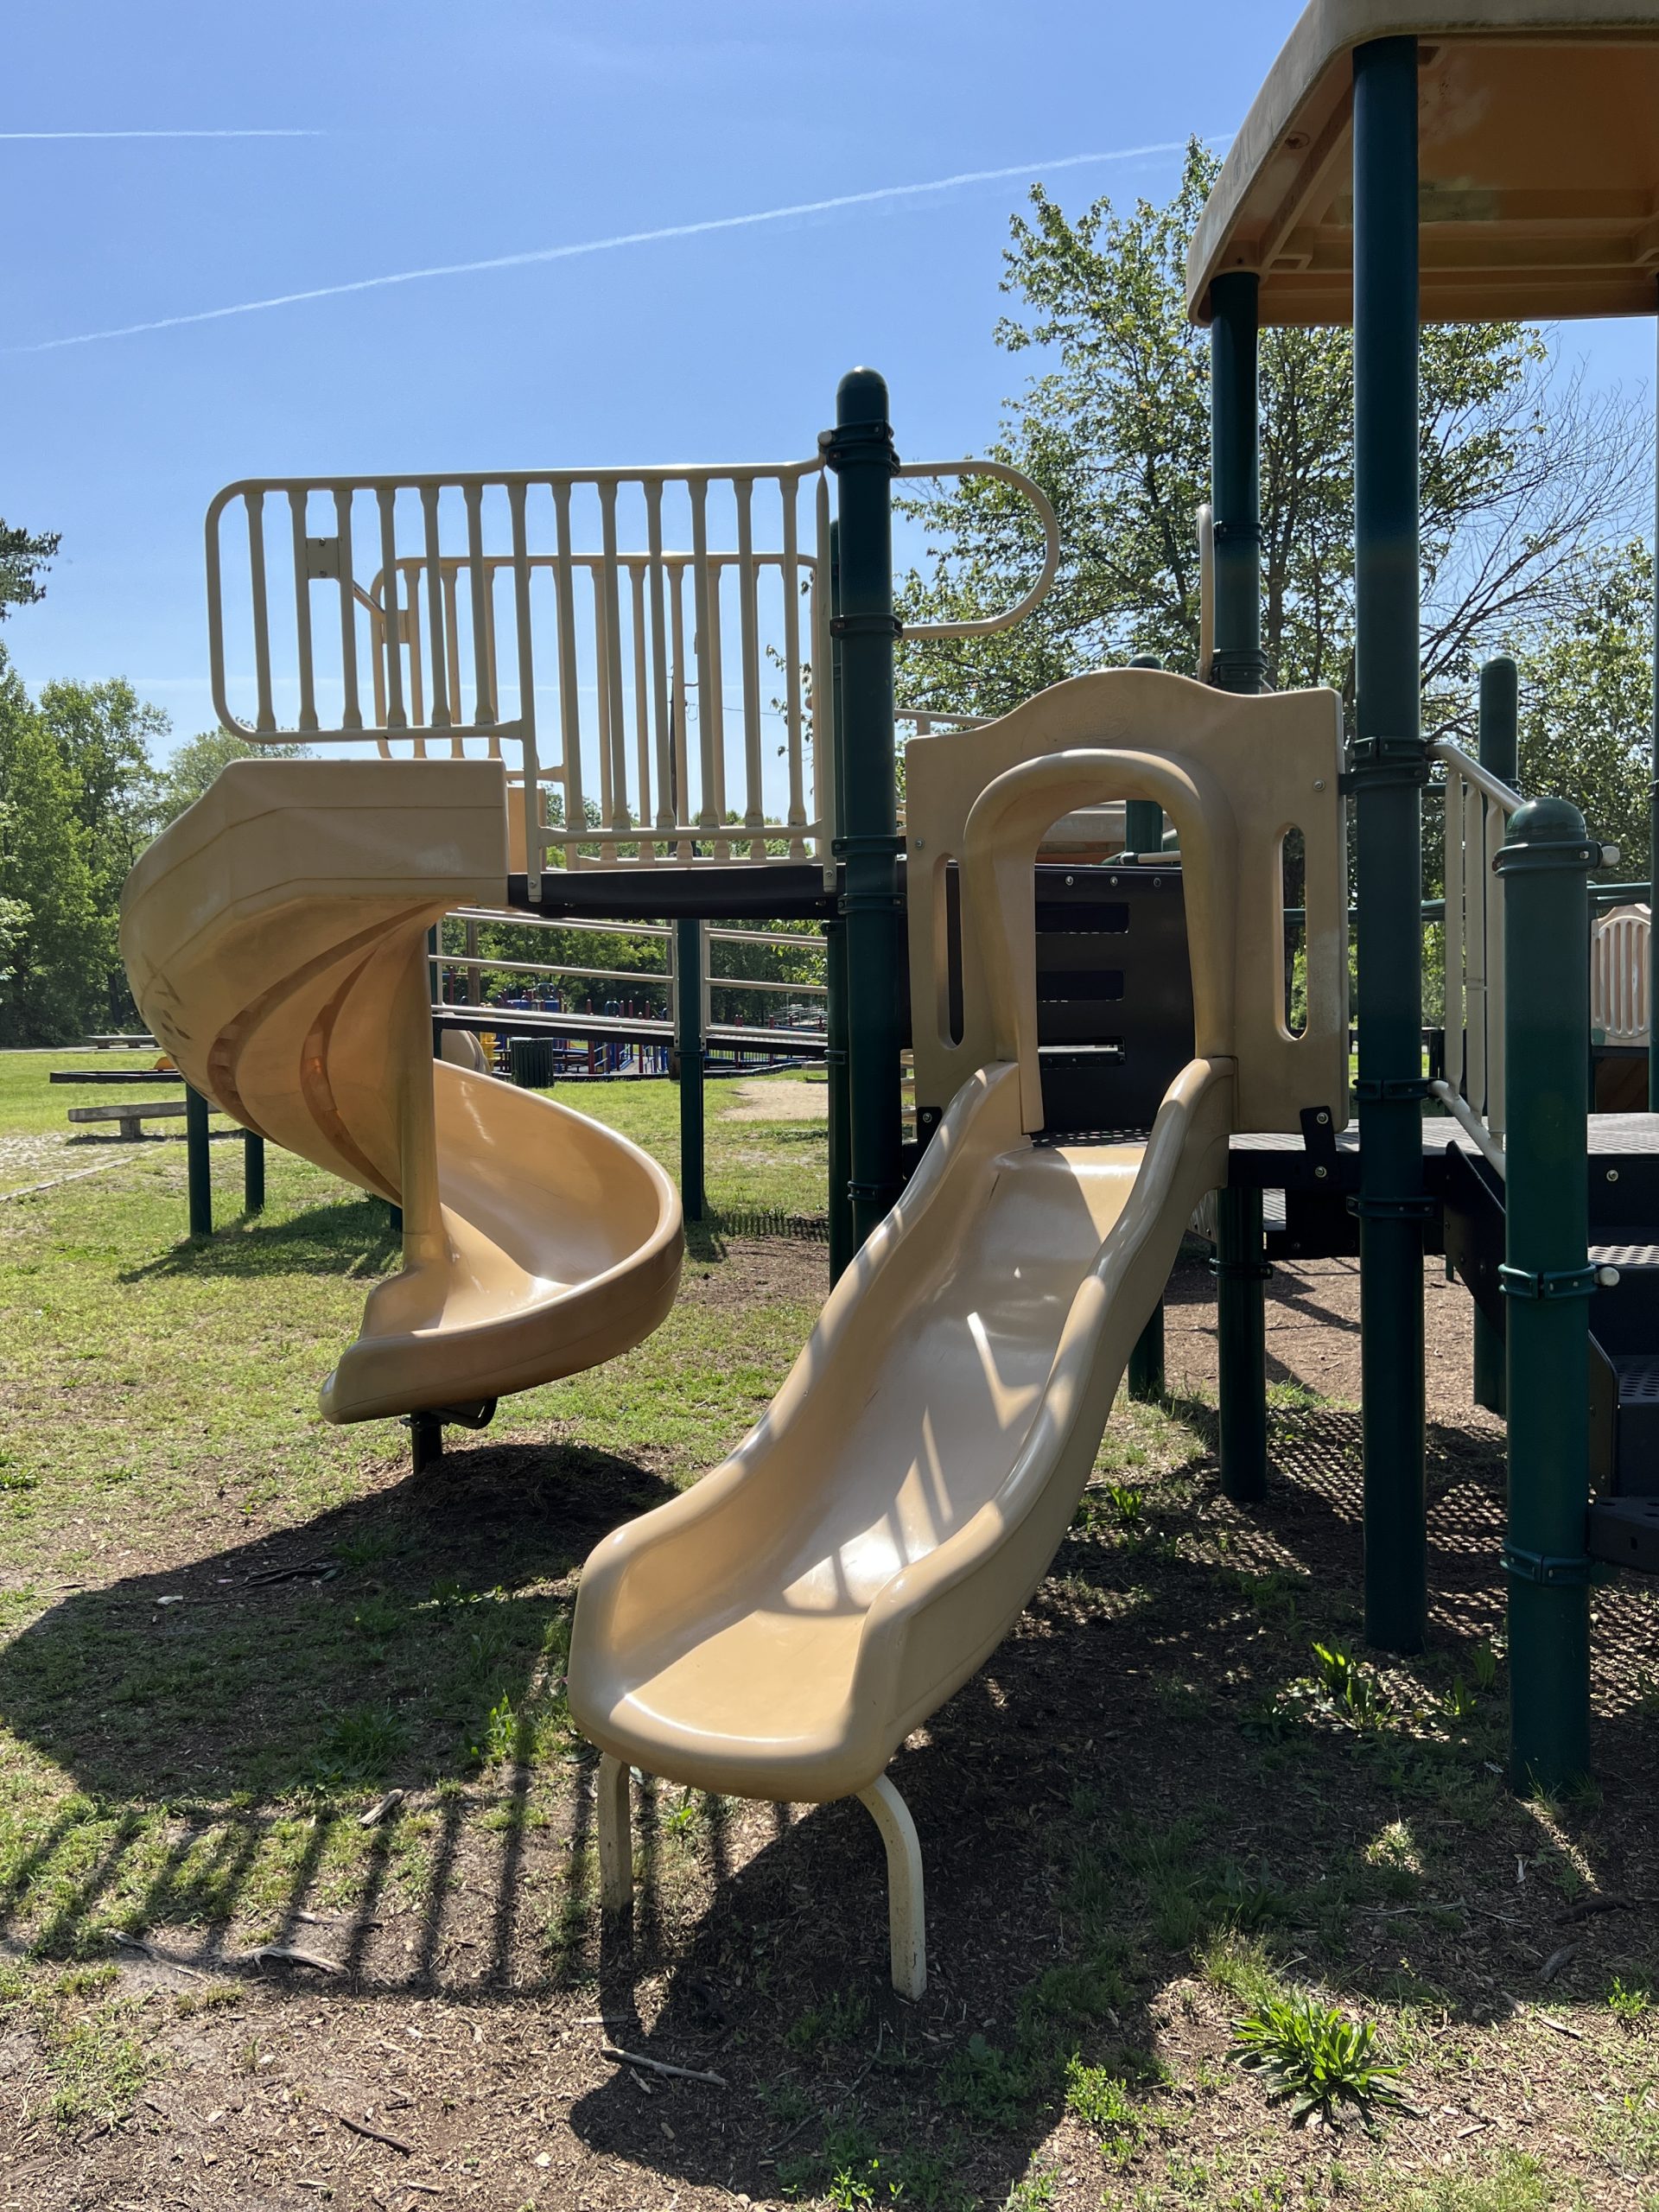 Waltman Park Playground in Millville NJ 2 slides on older equipment